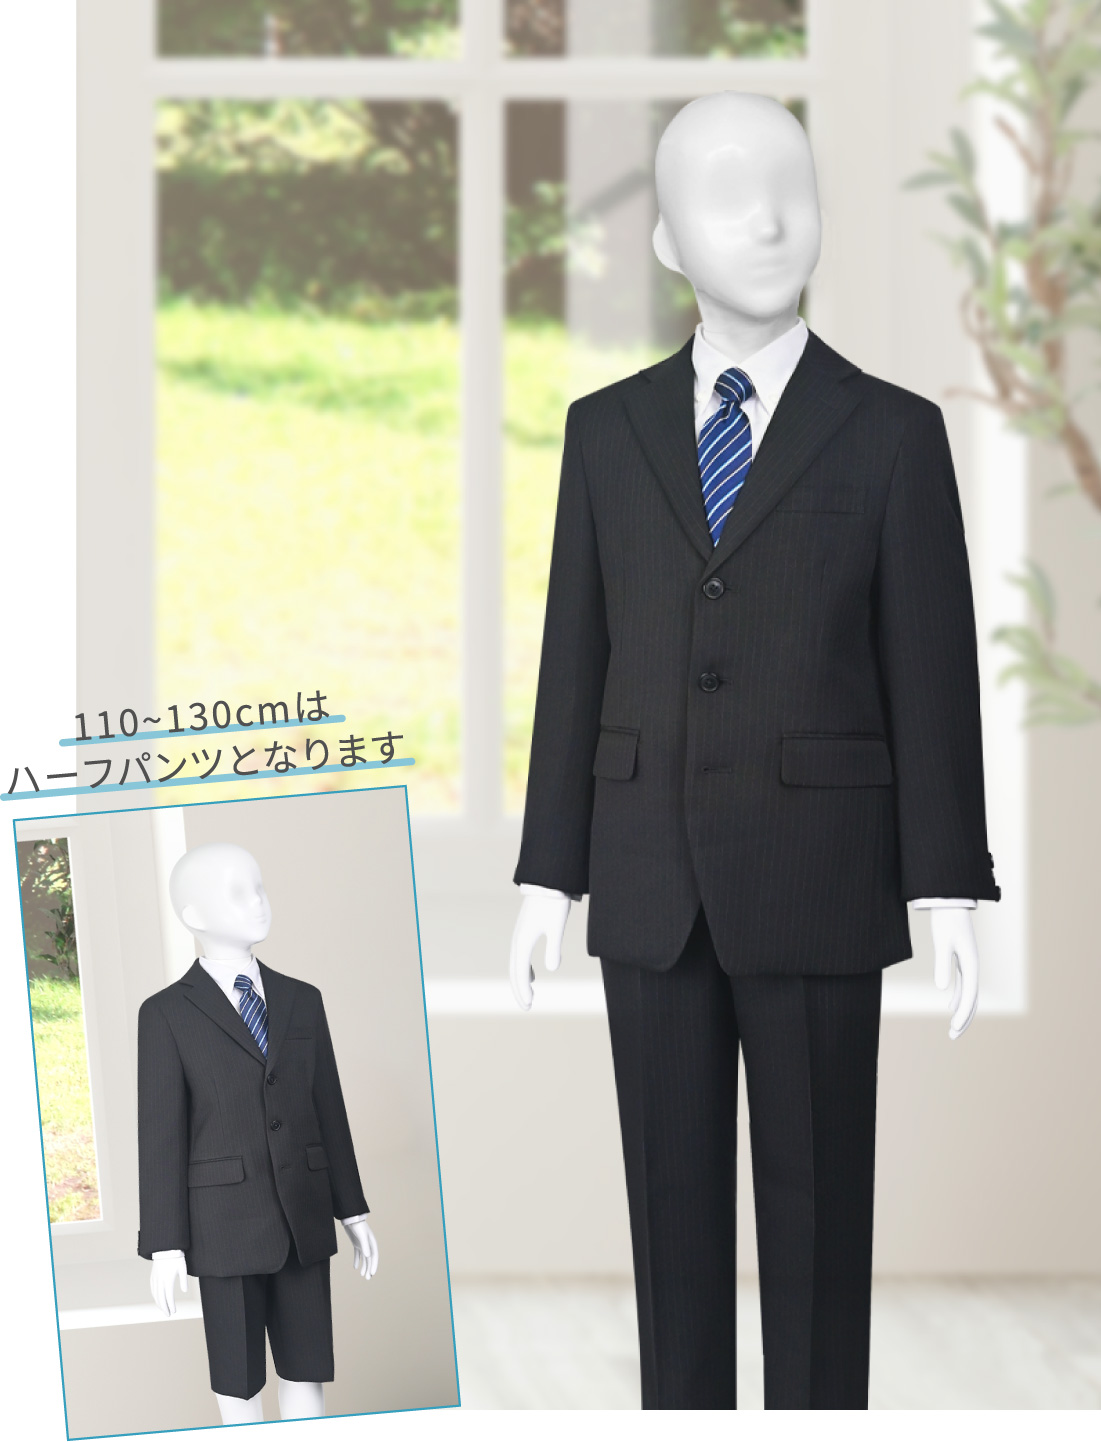 Black suit　110~130cmはハーフパンツとなります